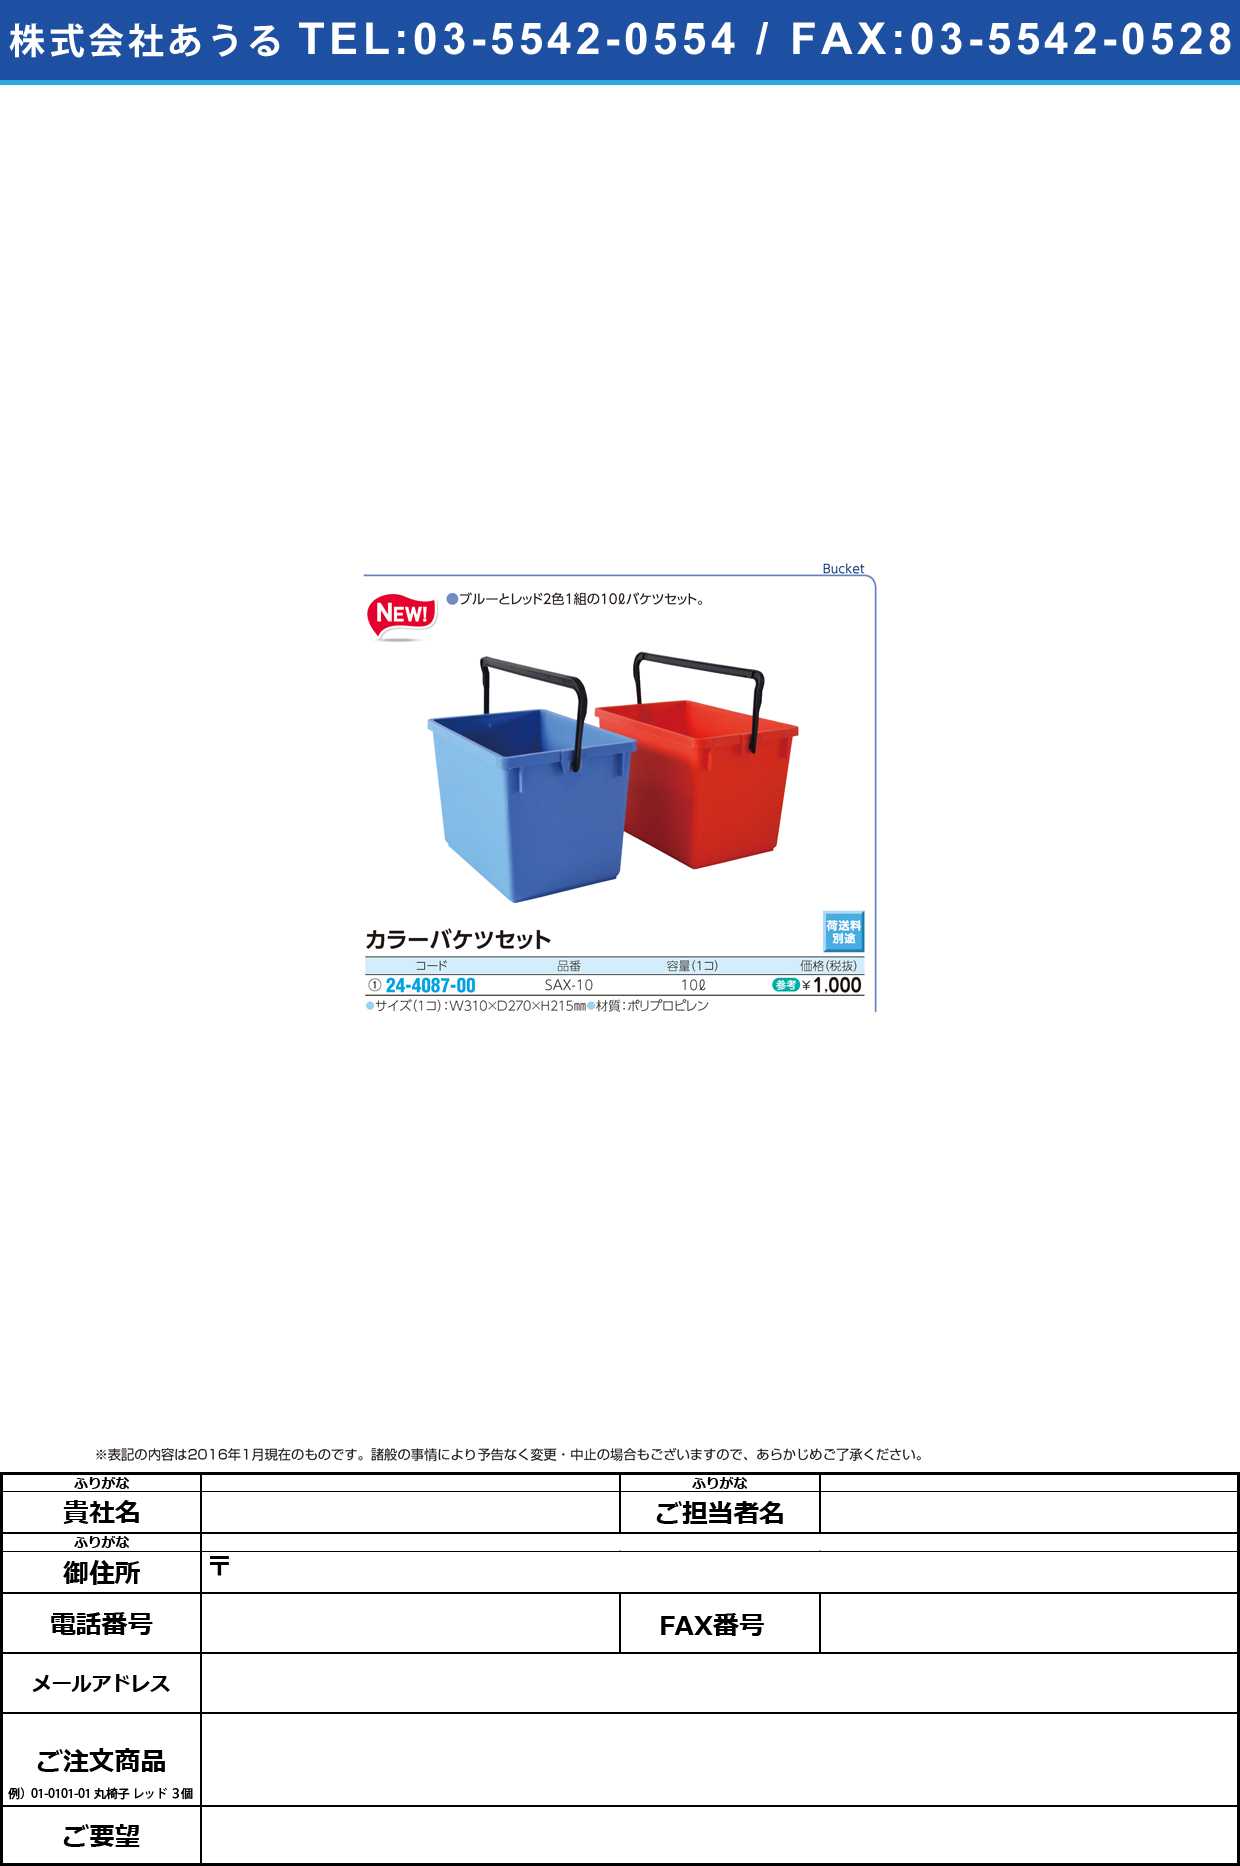 (24-4087-00)カラーバケツセット（赤・青） ｶﾗｰﾊﾞｹﾂｾｯﾄ SAX-10(10L)【1組単位】【2016年カタログ商品】